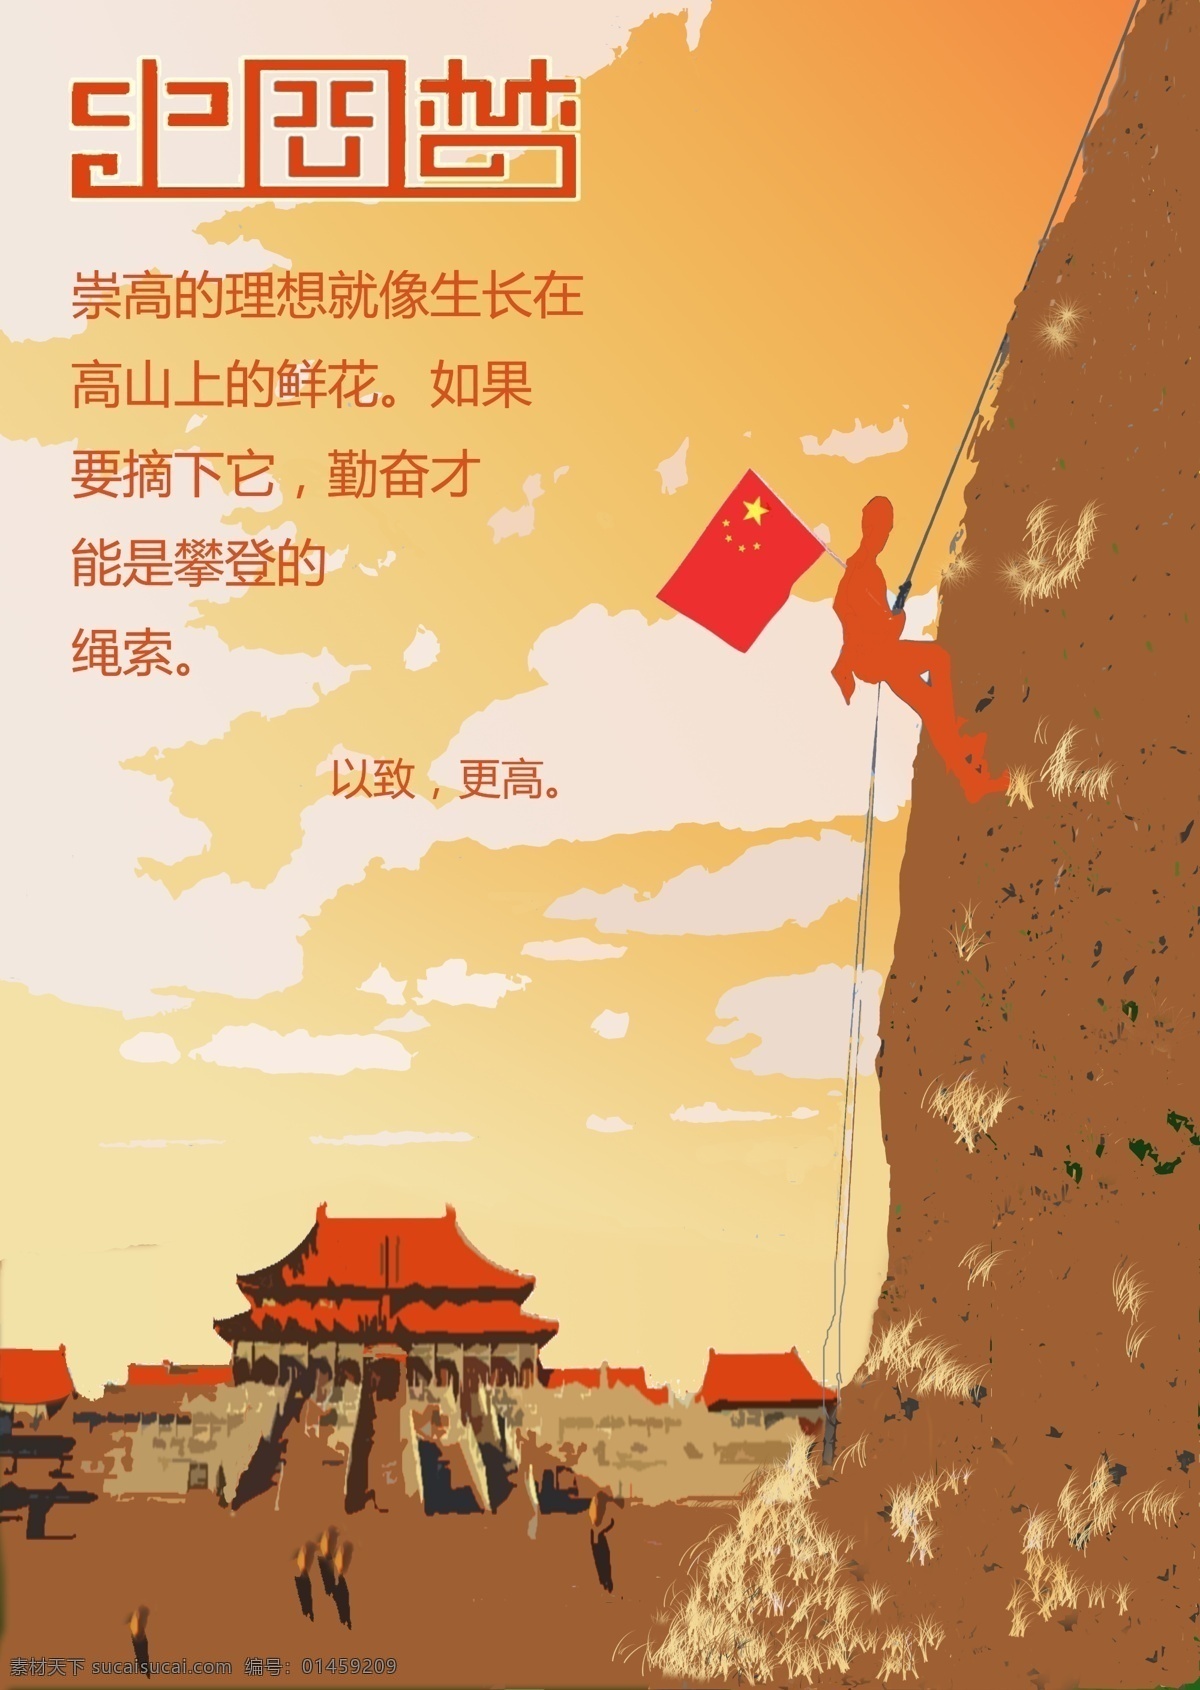 中国 梦 主题 海报 铁人三项 创意海报 暖调 中国梦 黄色